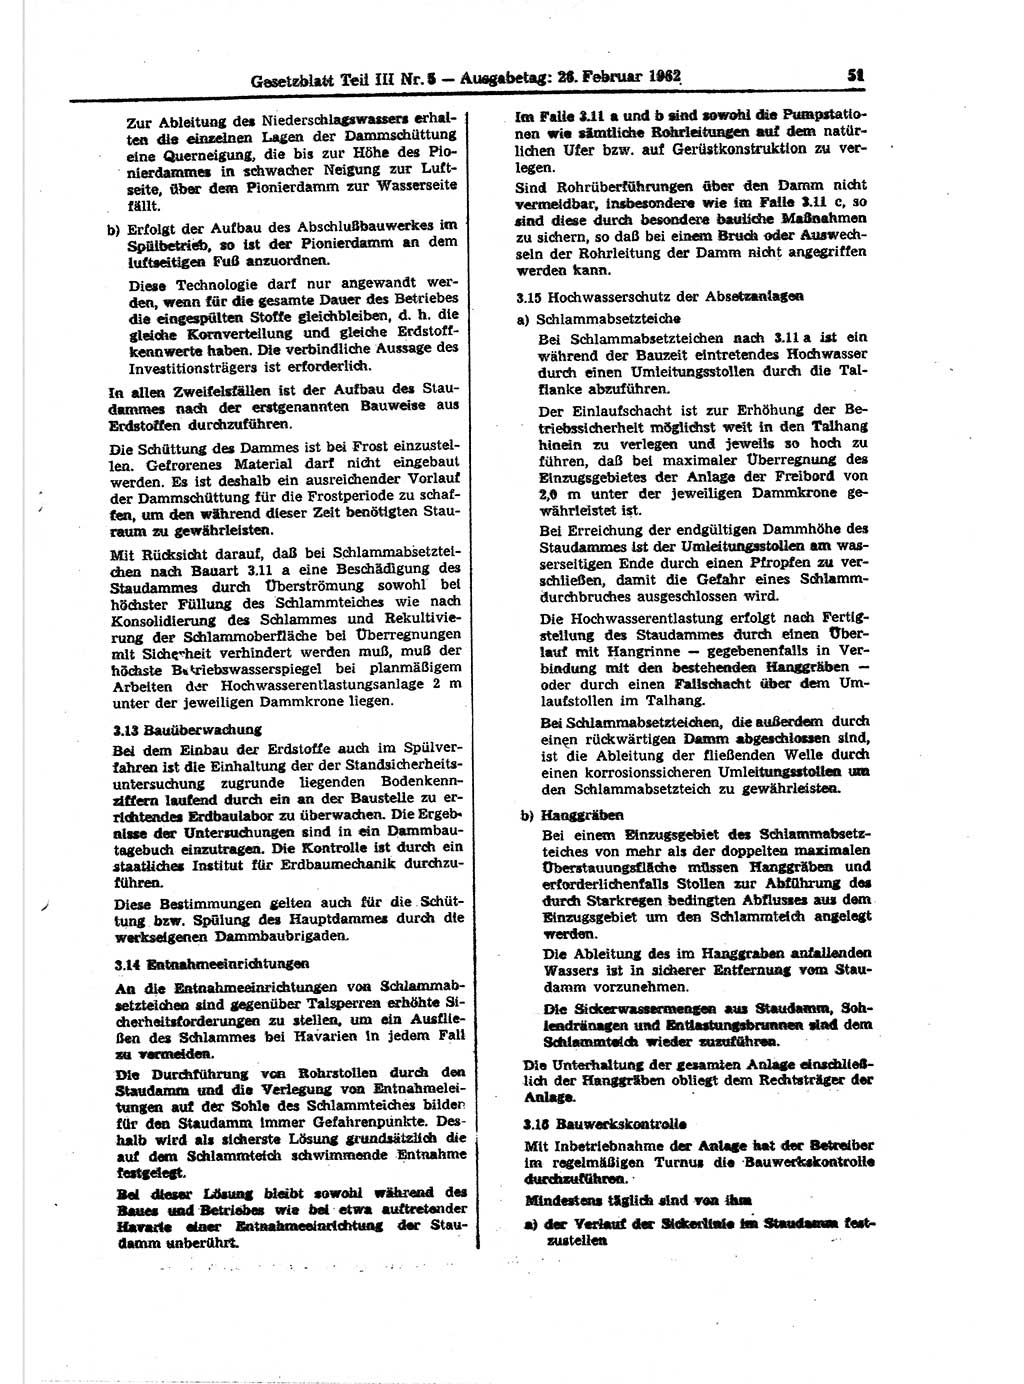 Gesetzblatt (GBl.) der Deutschen Demokratischen Republik (DDR) Teil ⅠⅠⅠ 1962, Seite 51 (GBl. DDR ⅠⅠⅠ 1962, S. 51)